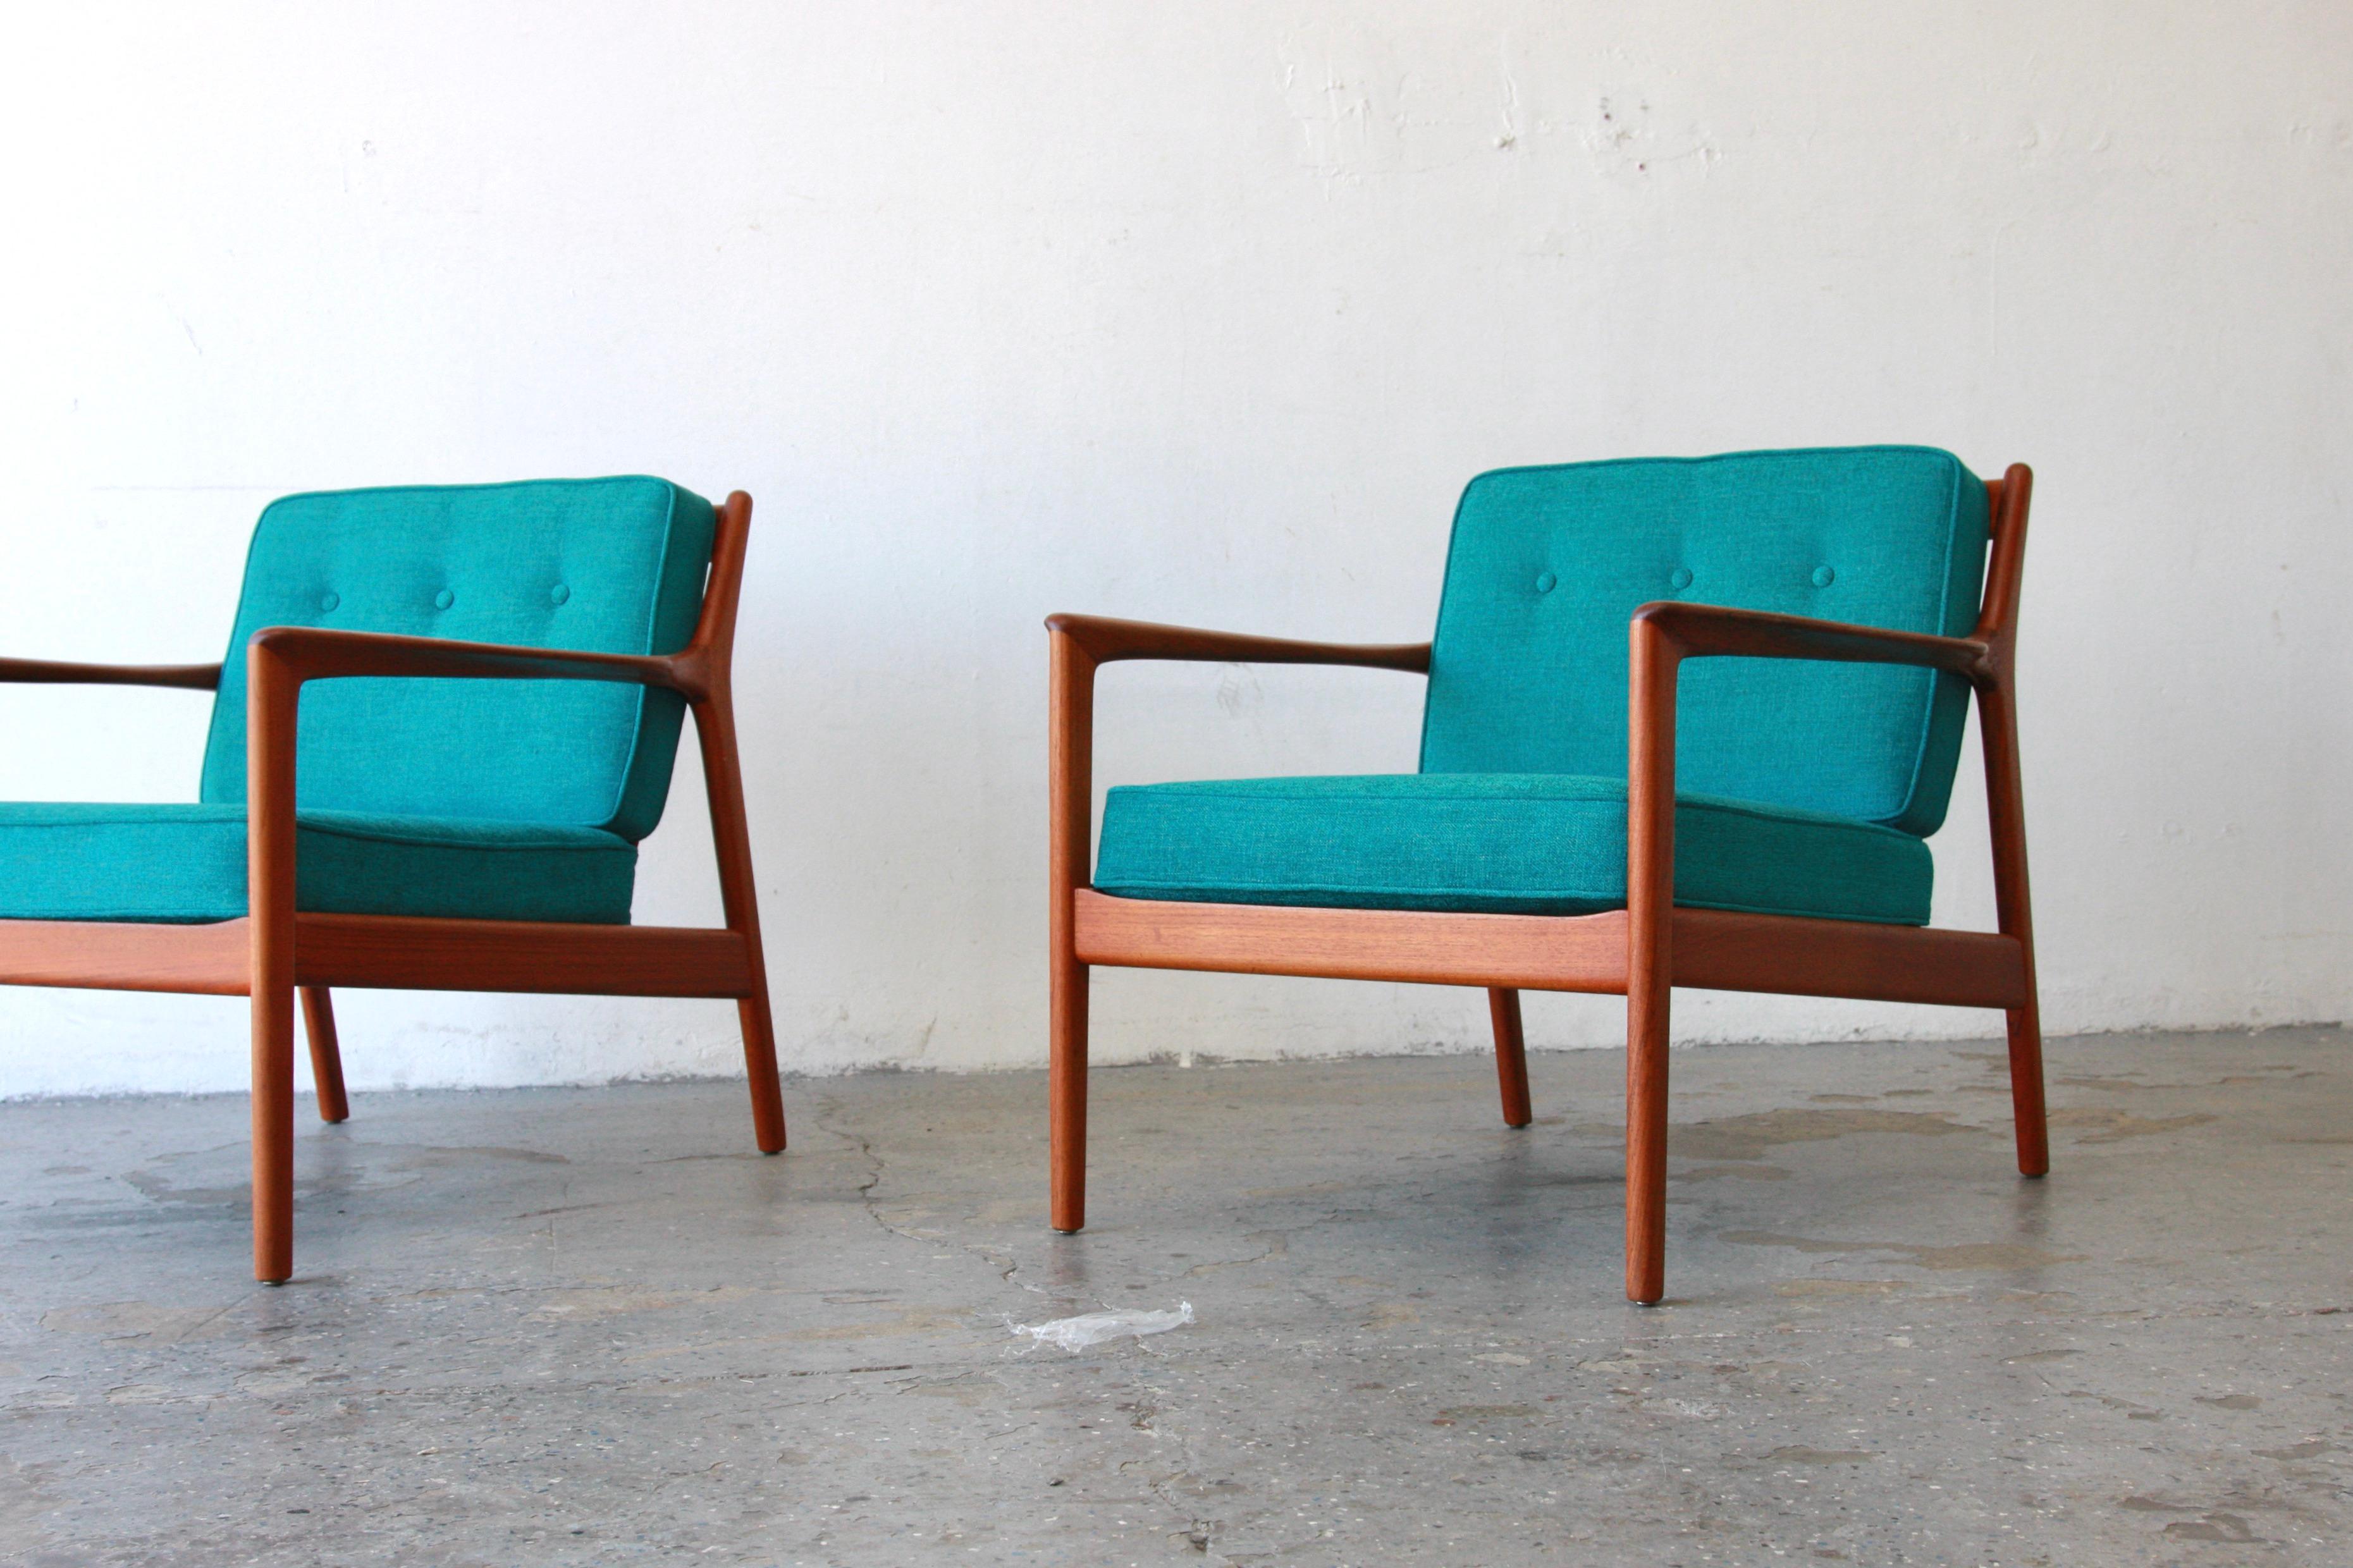 Paar Dänisch Modern Dux  USA75 Stühle entworfen von Folke Ohlsson Schweden 
Ein Paar Sessel Modell USA 75 aus Teakholz des schwedischen Designers Folke Ohlsson. Das Design dieser Sessel zeichnet sich durch eine sehr straffe Linie der Armlehnen und